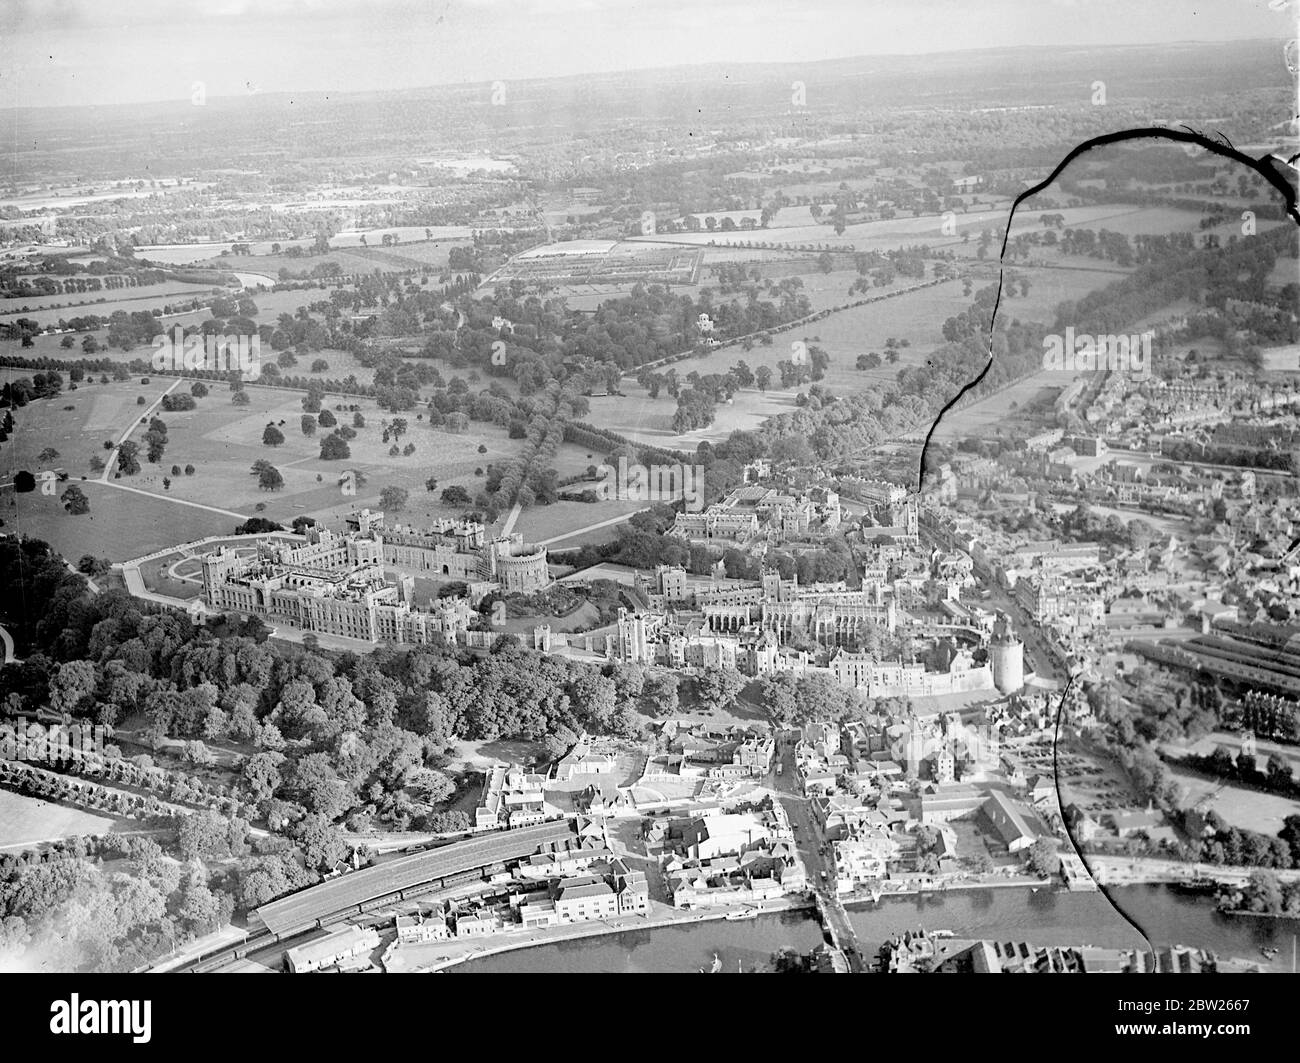 Château de Windsor, berceau des rois d'Angleterre depuis 1000 ans. Photos montrent une image des airs. 6 août 1938 Banque D'Images